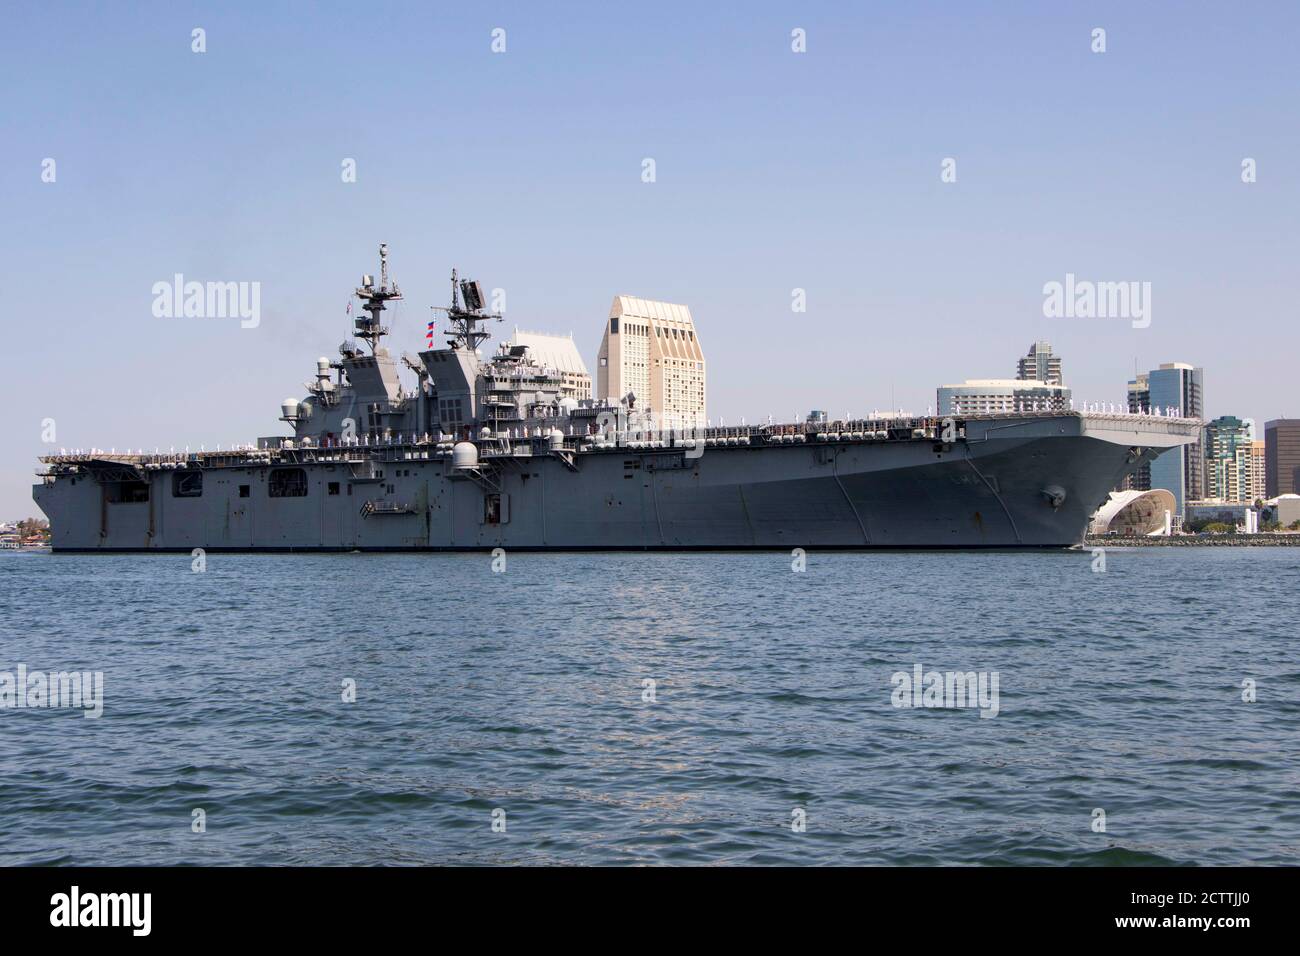 200918-N-KG738-1036 SAN DIEGO (SEPT 18, 2020) – le tout nouveau navire d'assaut amphibie de classe américaine USS Tripoli (LHA 7) arrive à son nouveau homeport à la base navale de San Diego. Tripoli est le deuxième navire d'assaut amphibie de classe américaine à rejoindre la flotte. Le navire a été mis en service à Pascagoula, au Mils., le 15 juillet 2020. (É.-U. Photo de la marine par Spécialiste des communications de masse 1ère classe Woody S. Paschall) Banque D'Images